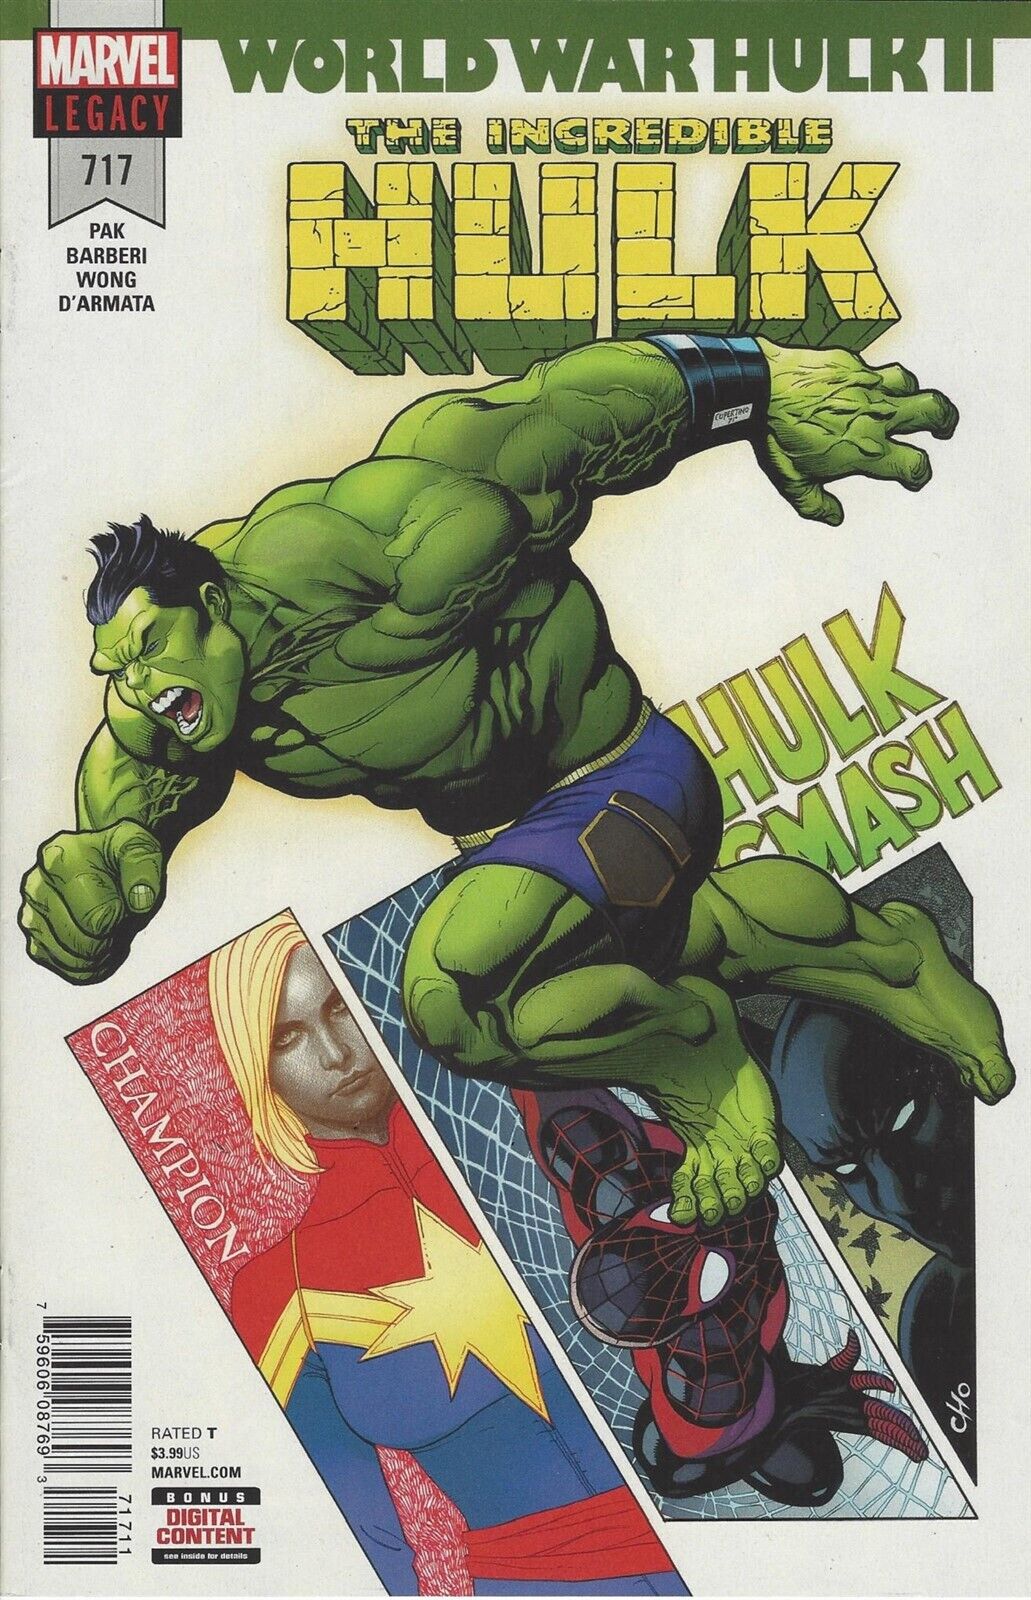 Incredible Hulk #717 World War Hulk II Part IV